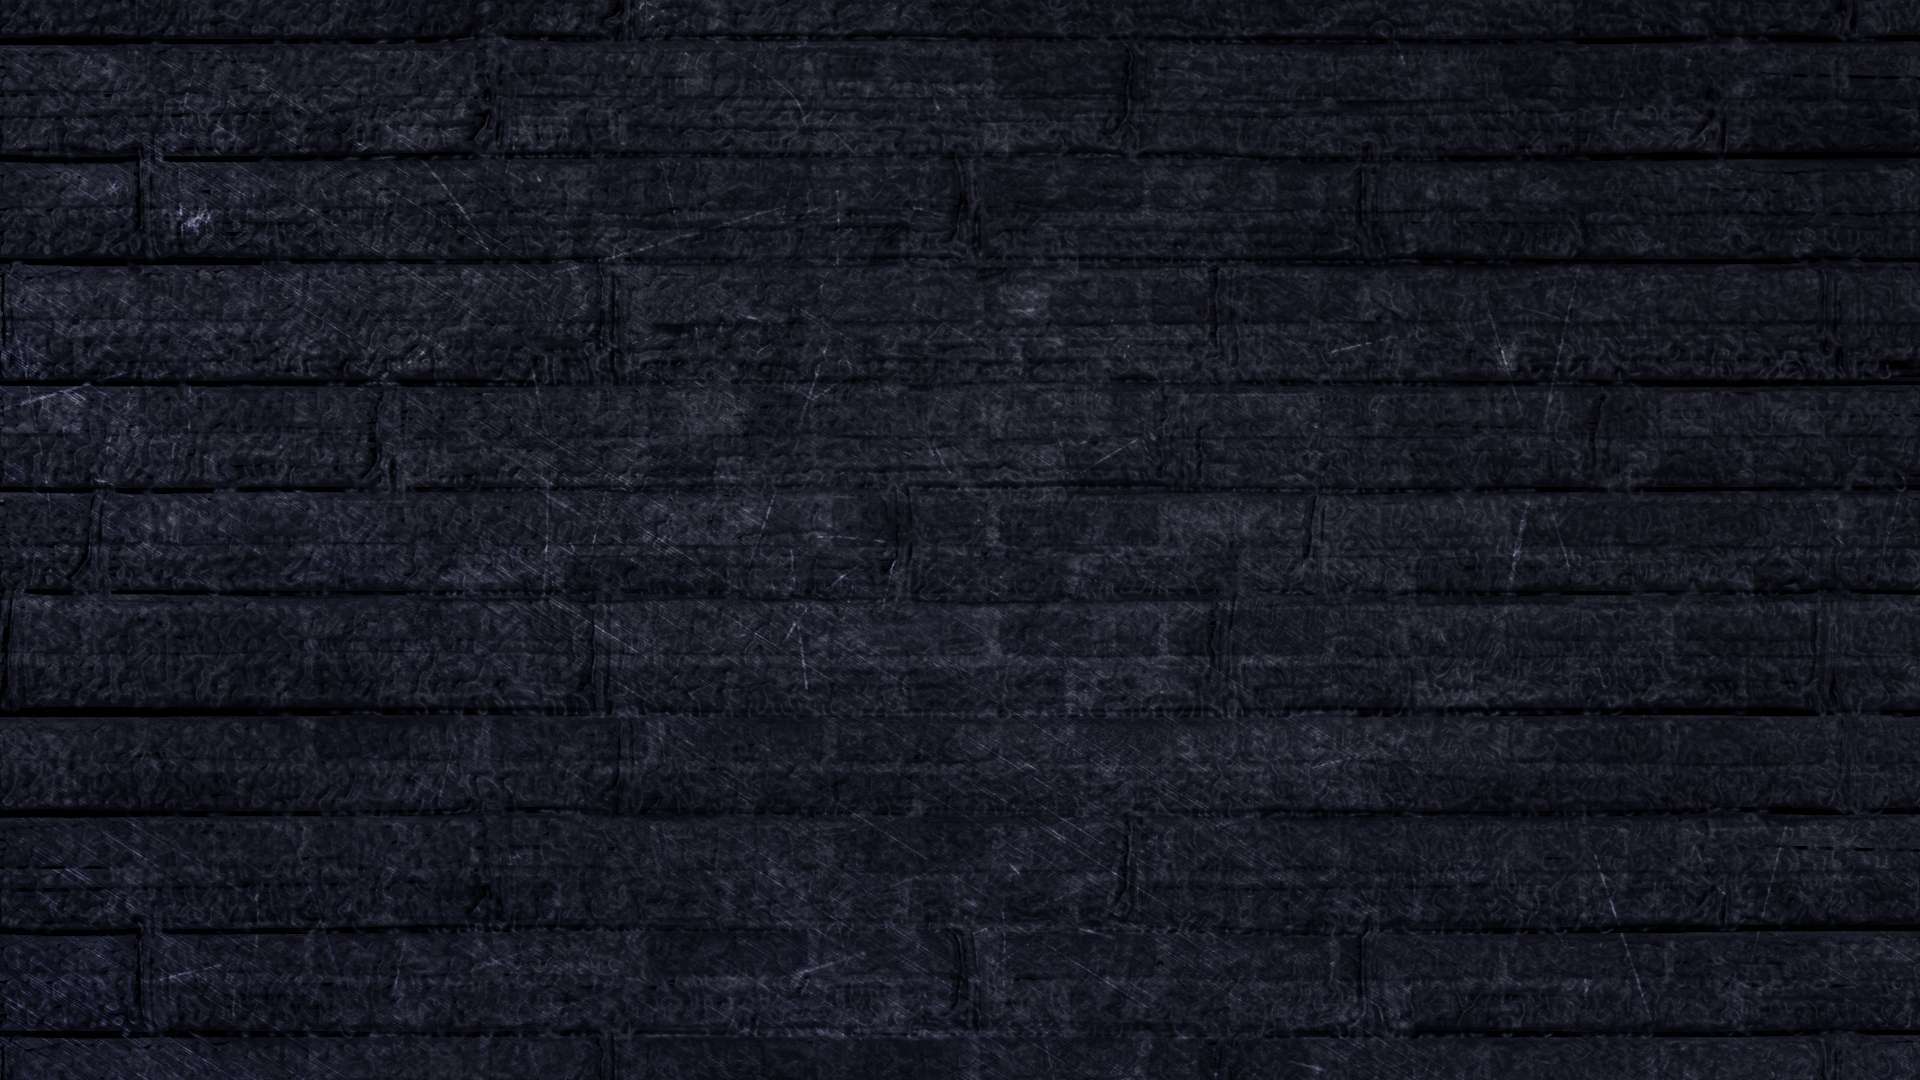 Black HD Wallpapers 1080p - WallpaperSafari